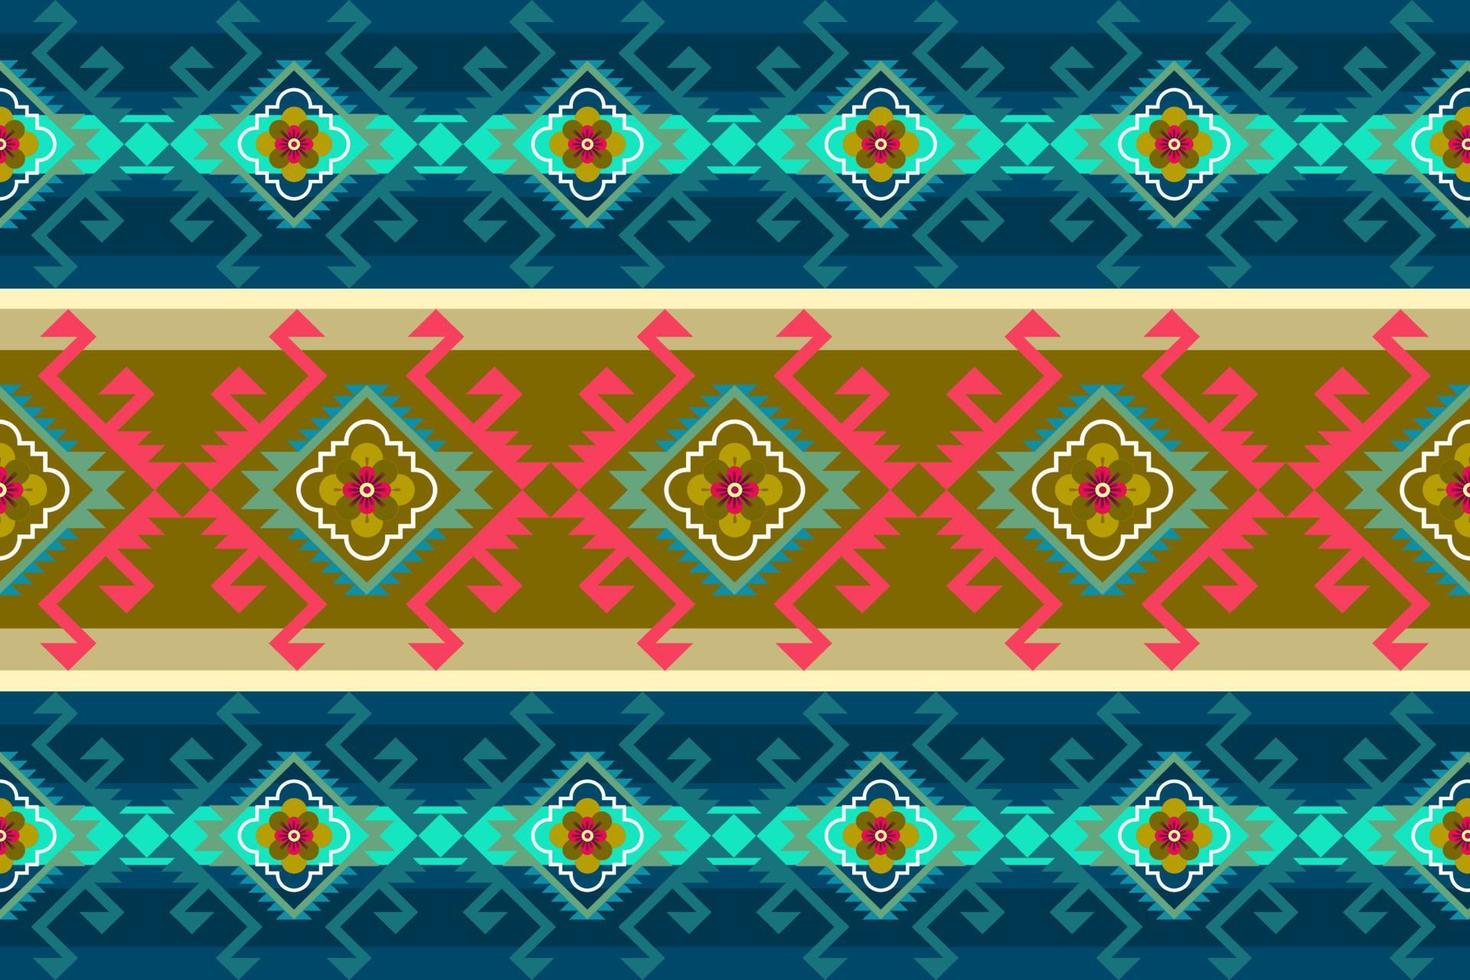 geometrische etnische oosterse ikat patroon traditioneel ontwerp voor achtergrond,tapijt,behang,kleding,inwikkeling,batik,stof,vector illustration.embroidery stijl. vector